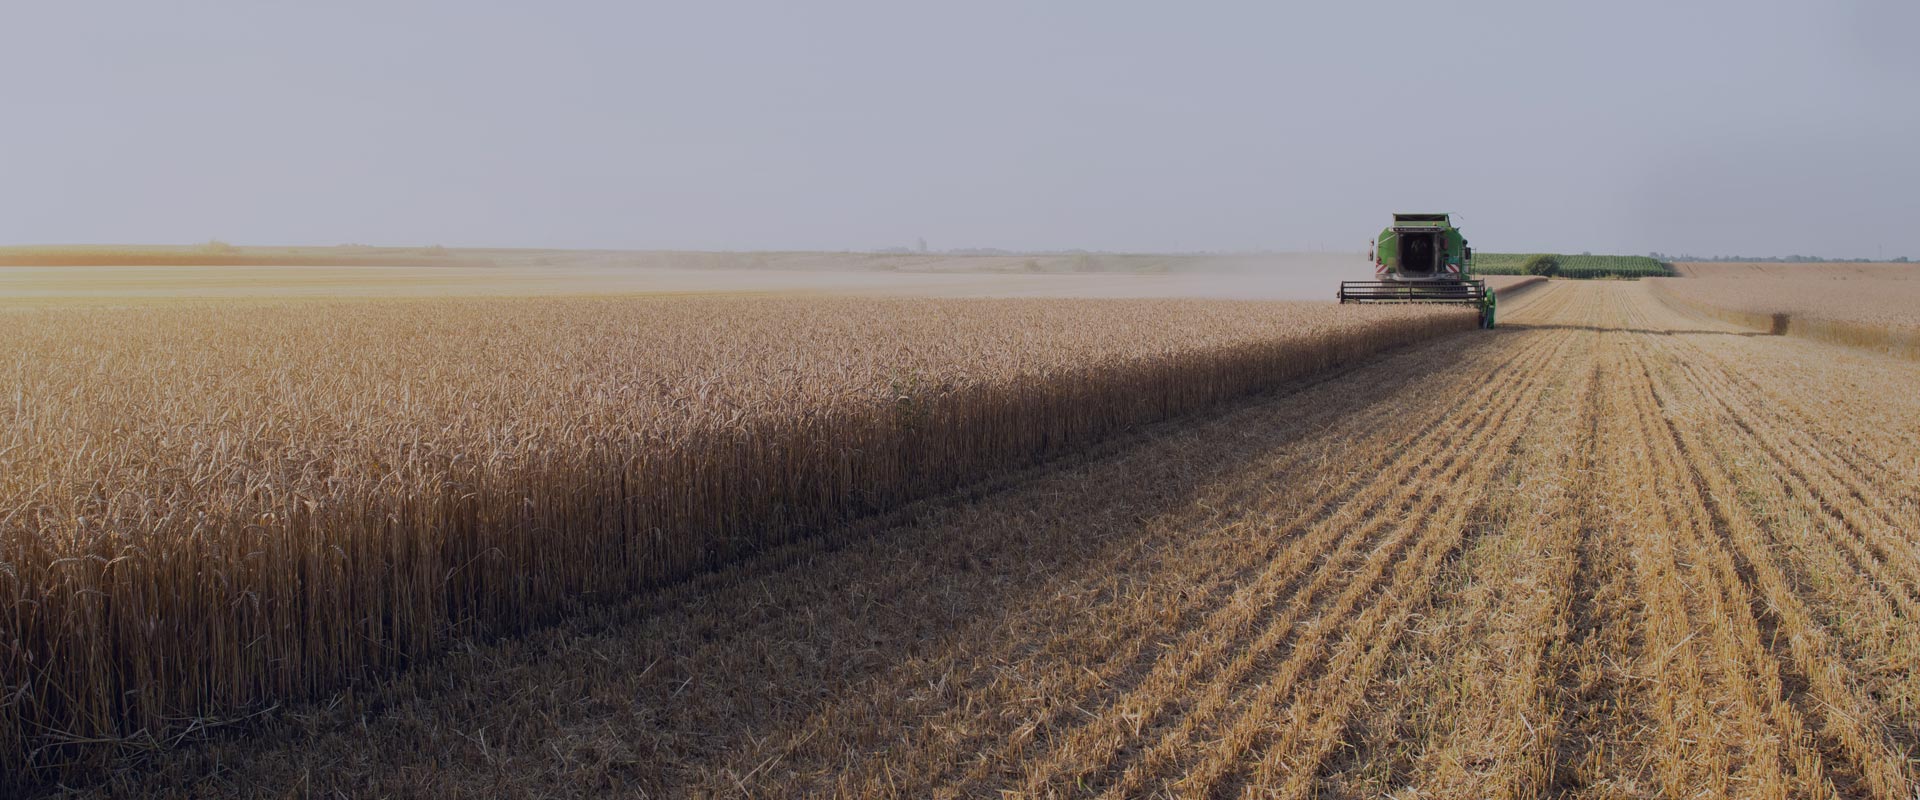 moissonneuse sur un champs de blé